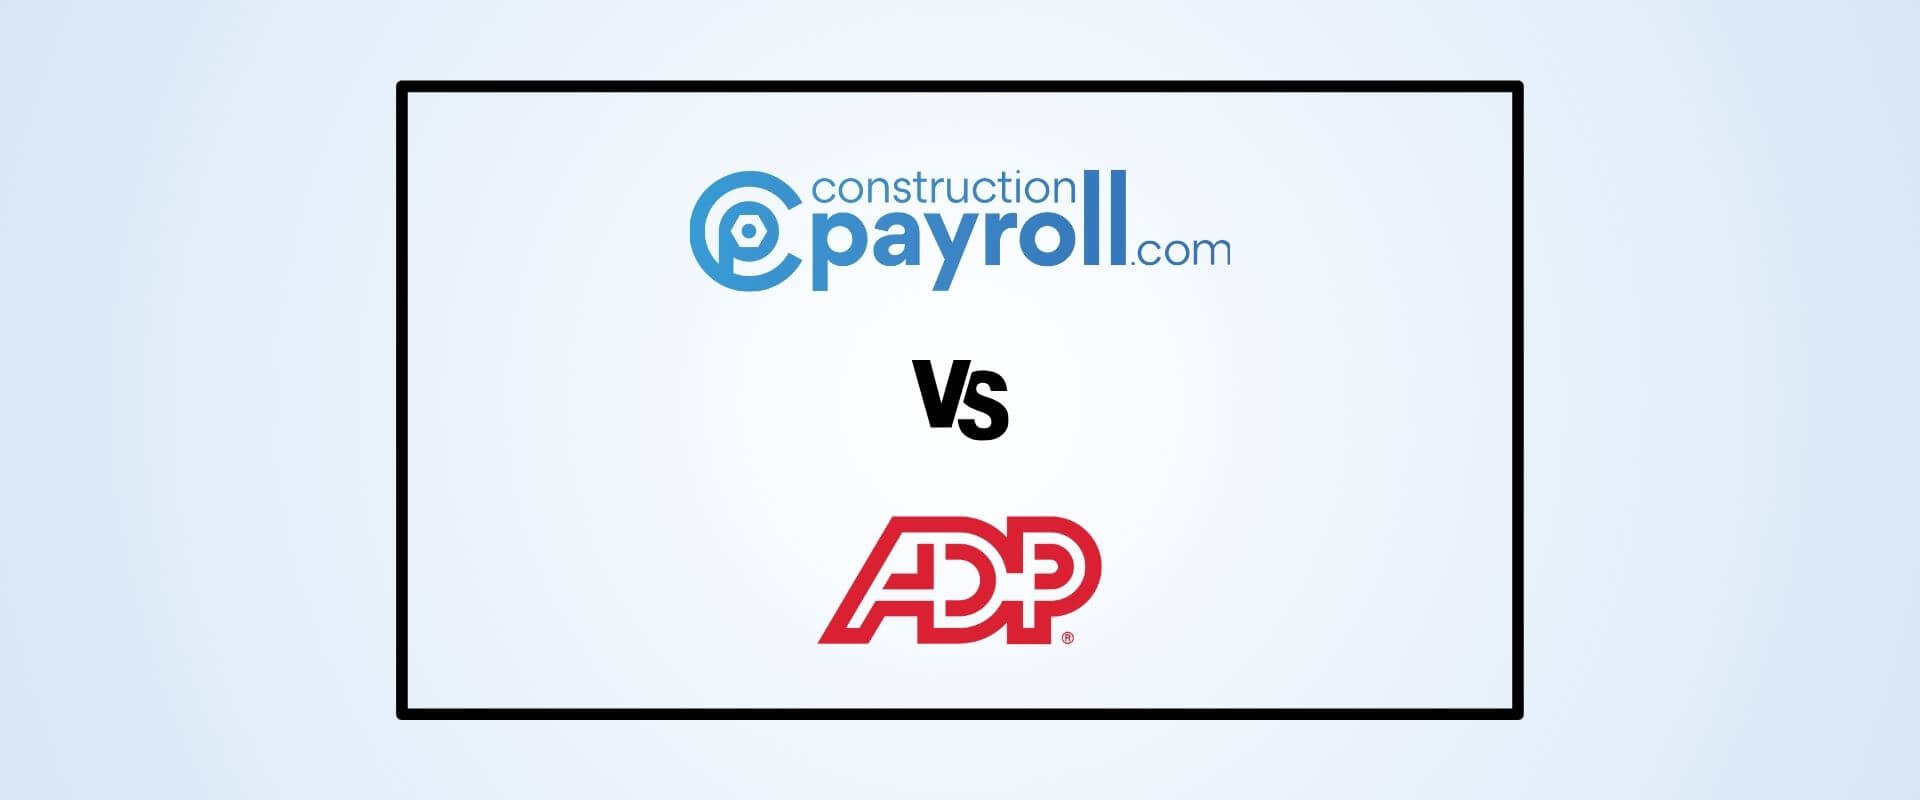 ConstructionPayroll.com versus ADP payroll software